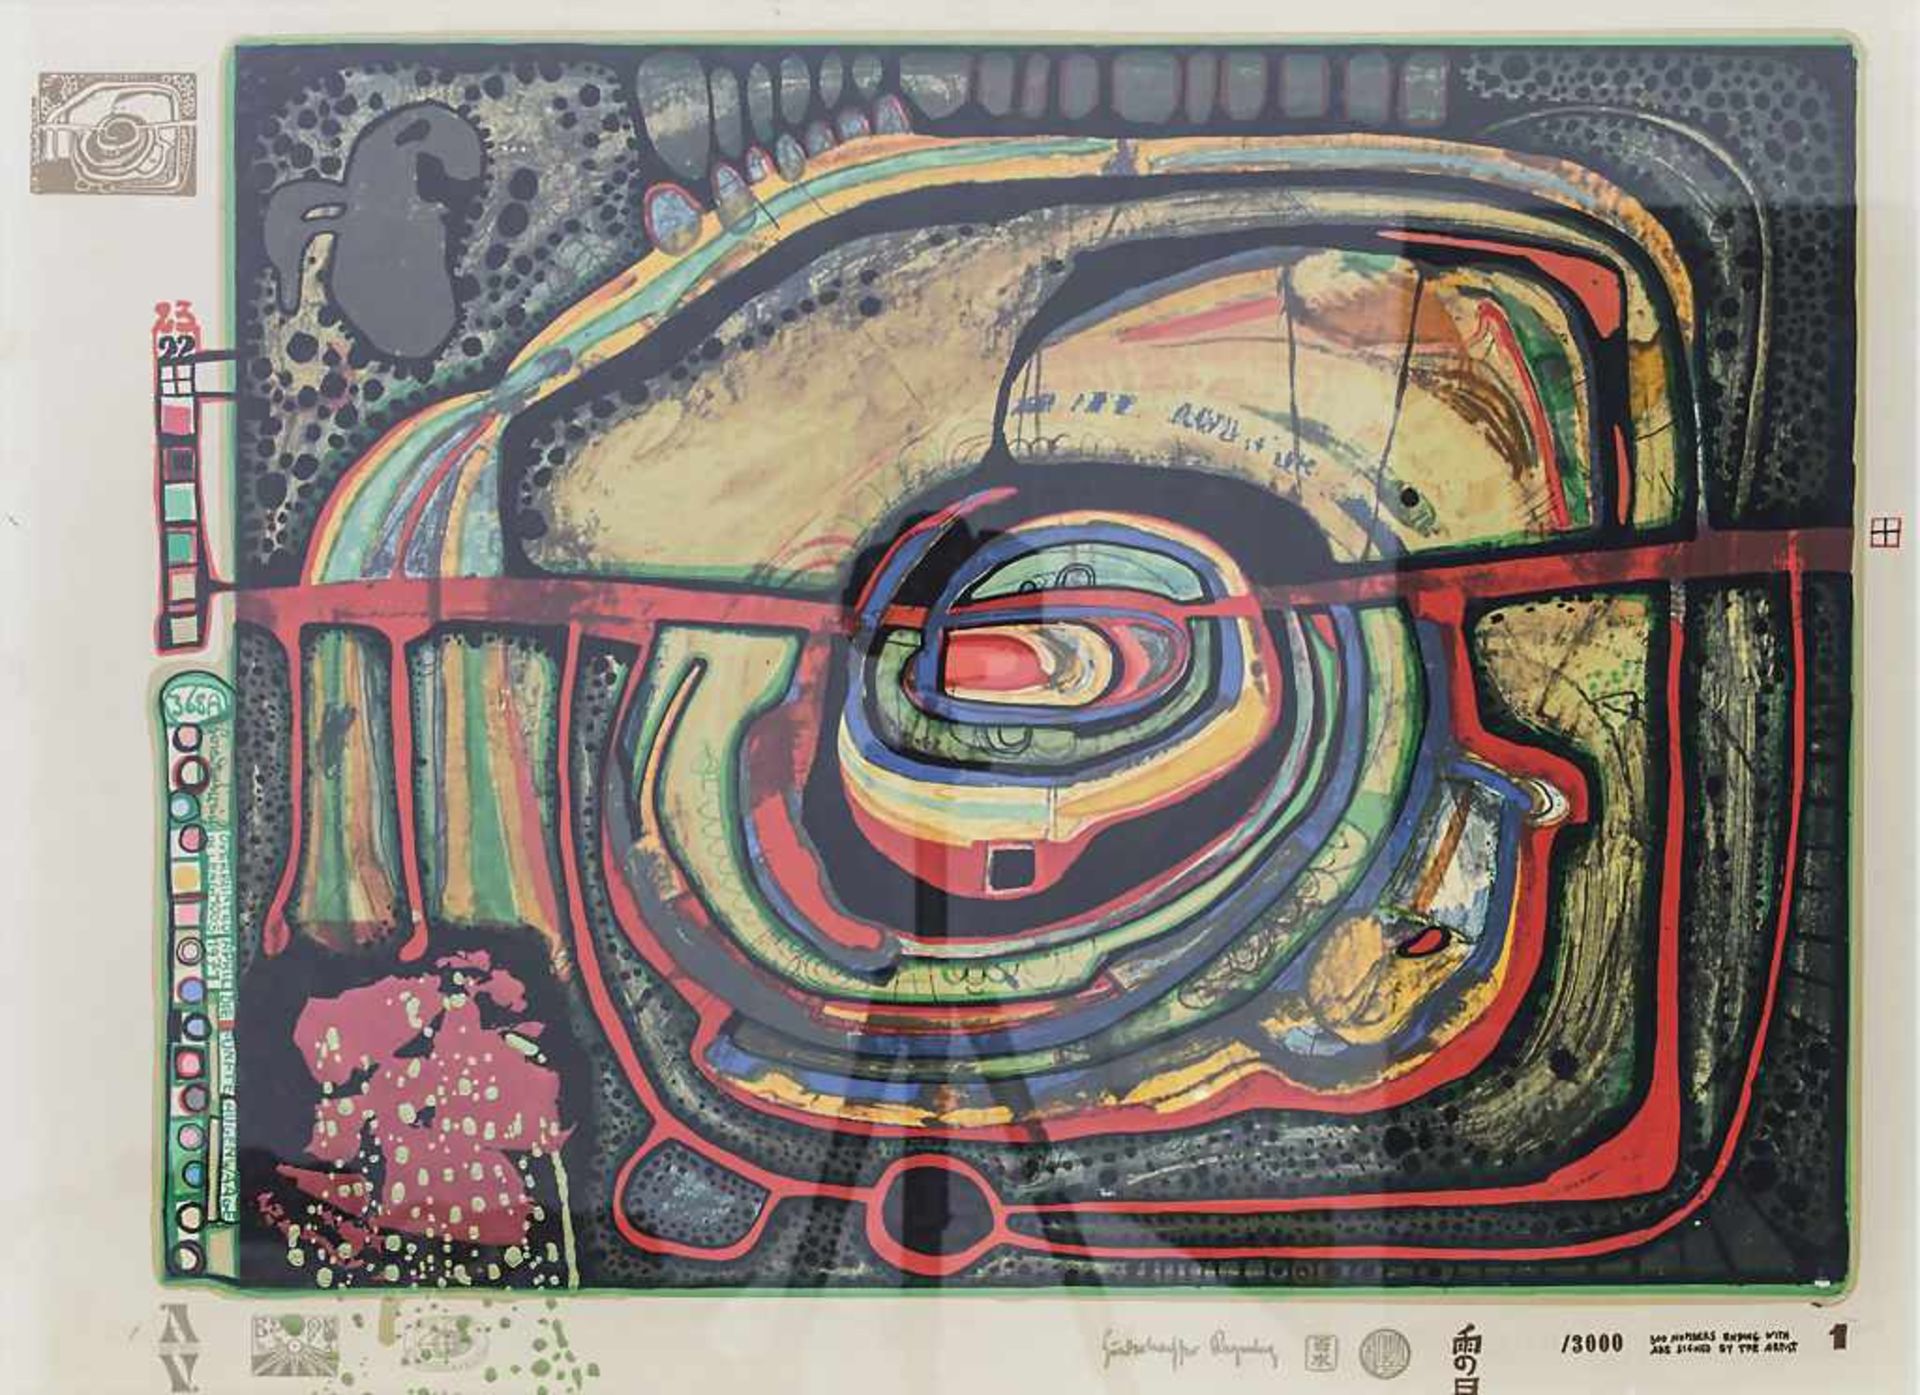 Friedensreich Hundertwasser (1928-2000), 'Die fünfte Augenwaage' Aus der Mappe 'Look at it from a